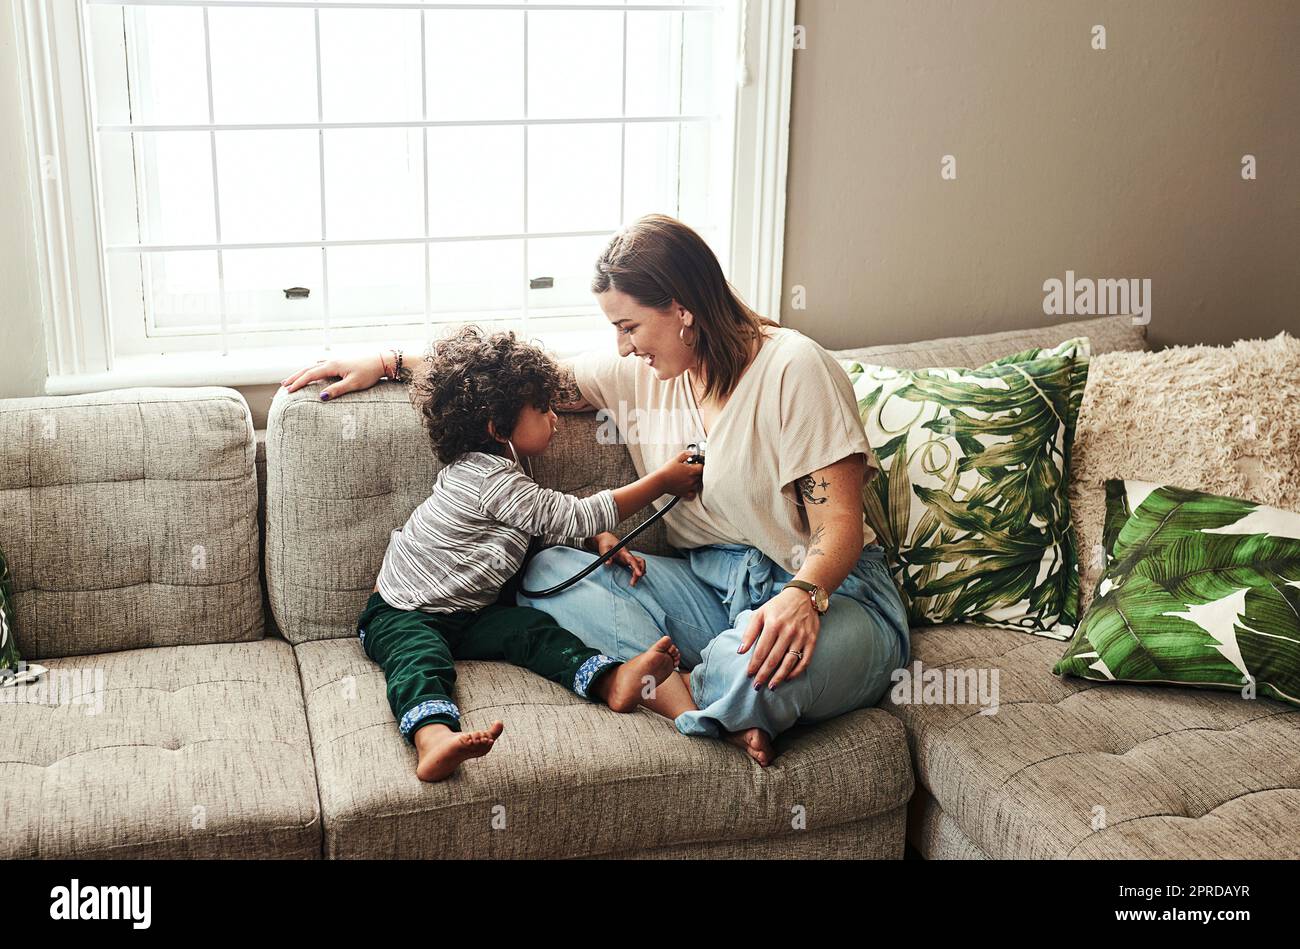 Abbiamo un medico in preparazione. una giovane donna allegra e suo figlio che giocano con uno stetoscopio mentre sono seduti su un divano a casa durante il giorno. Foto Stock